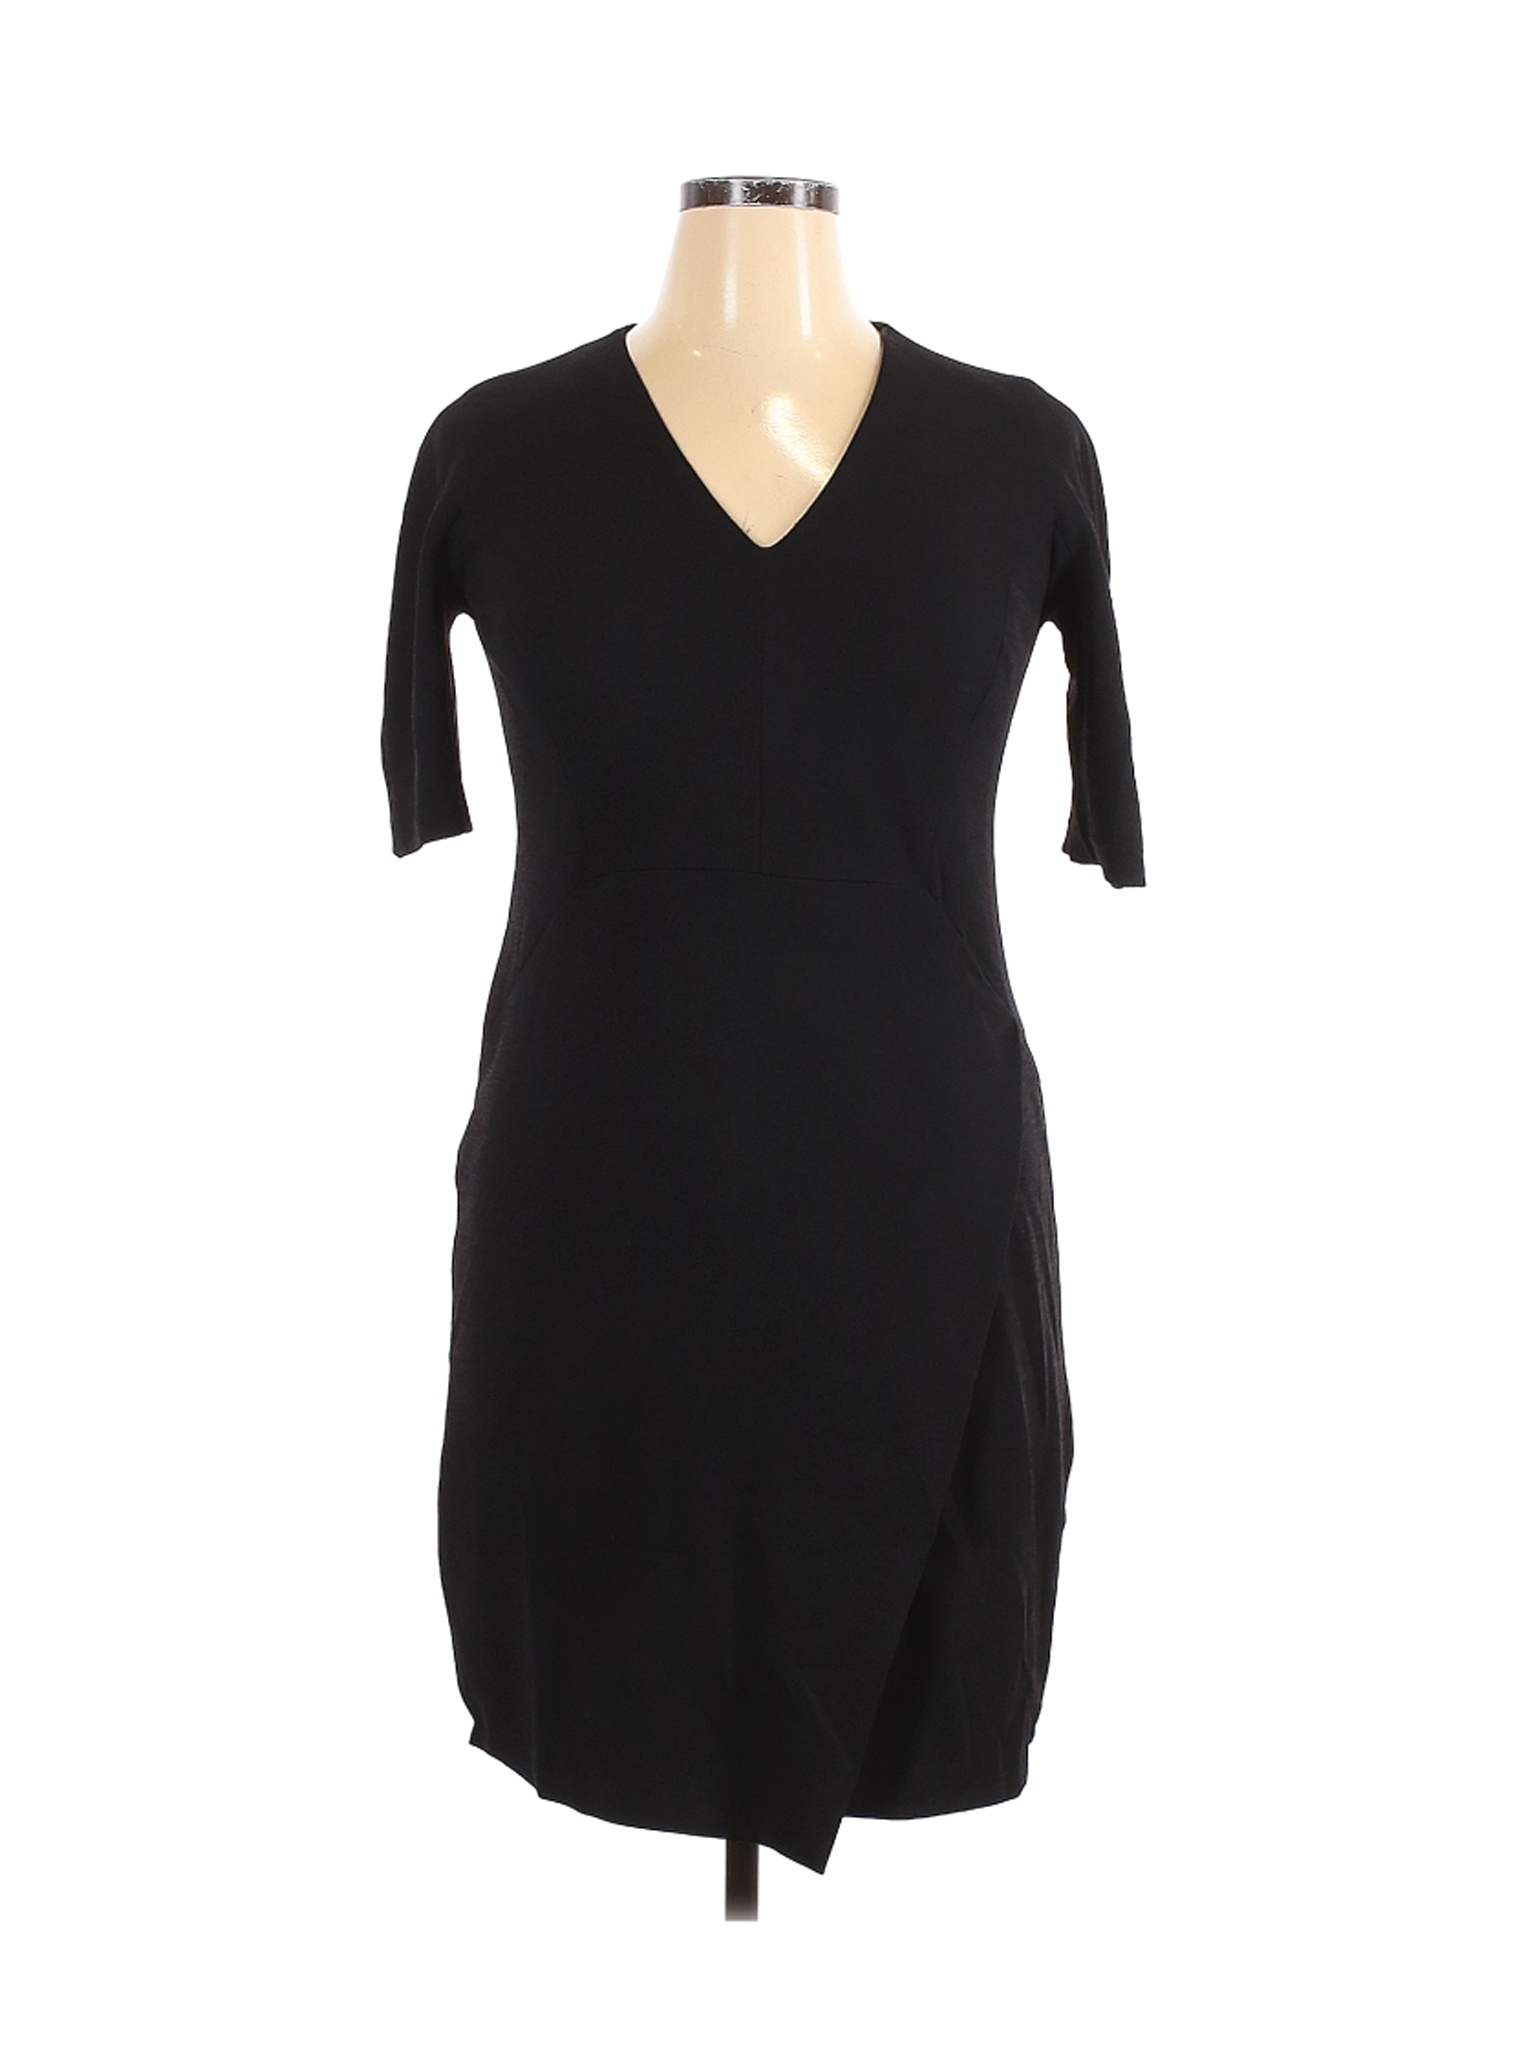 Saks Fifth Avenue Women Black Casual Dress 14 | eBay